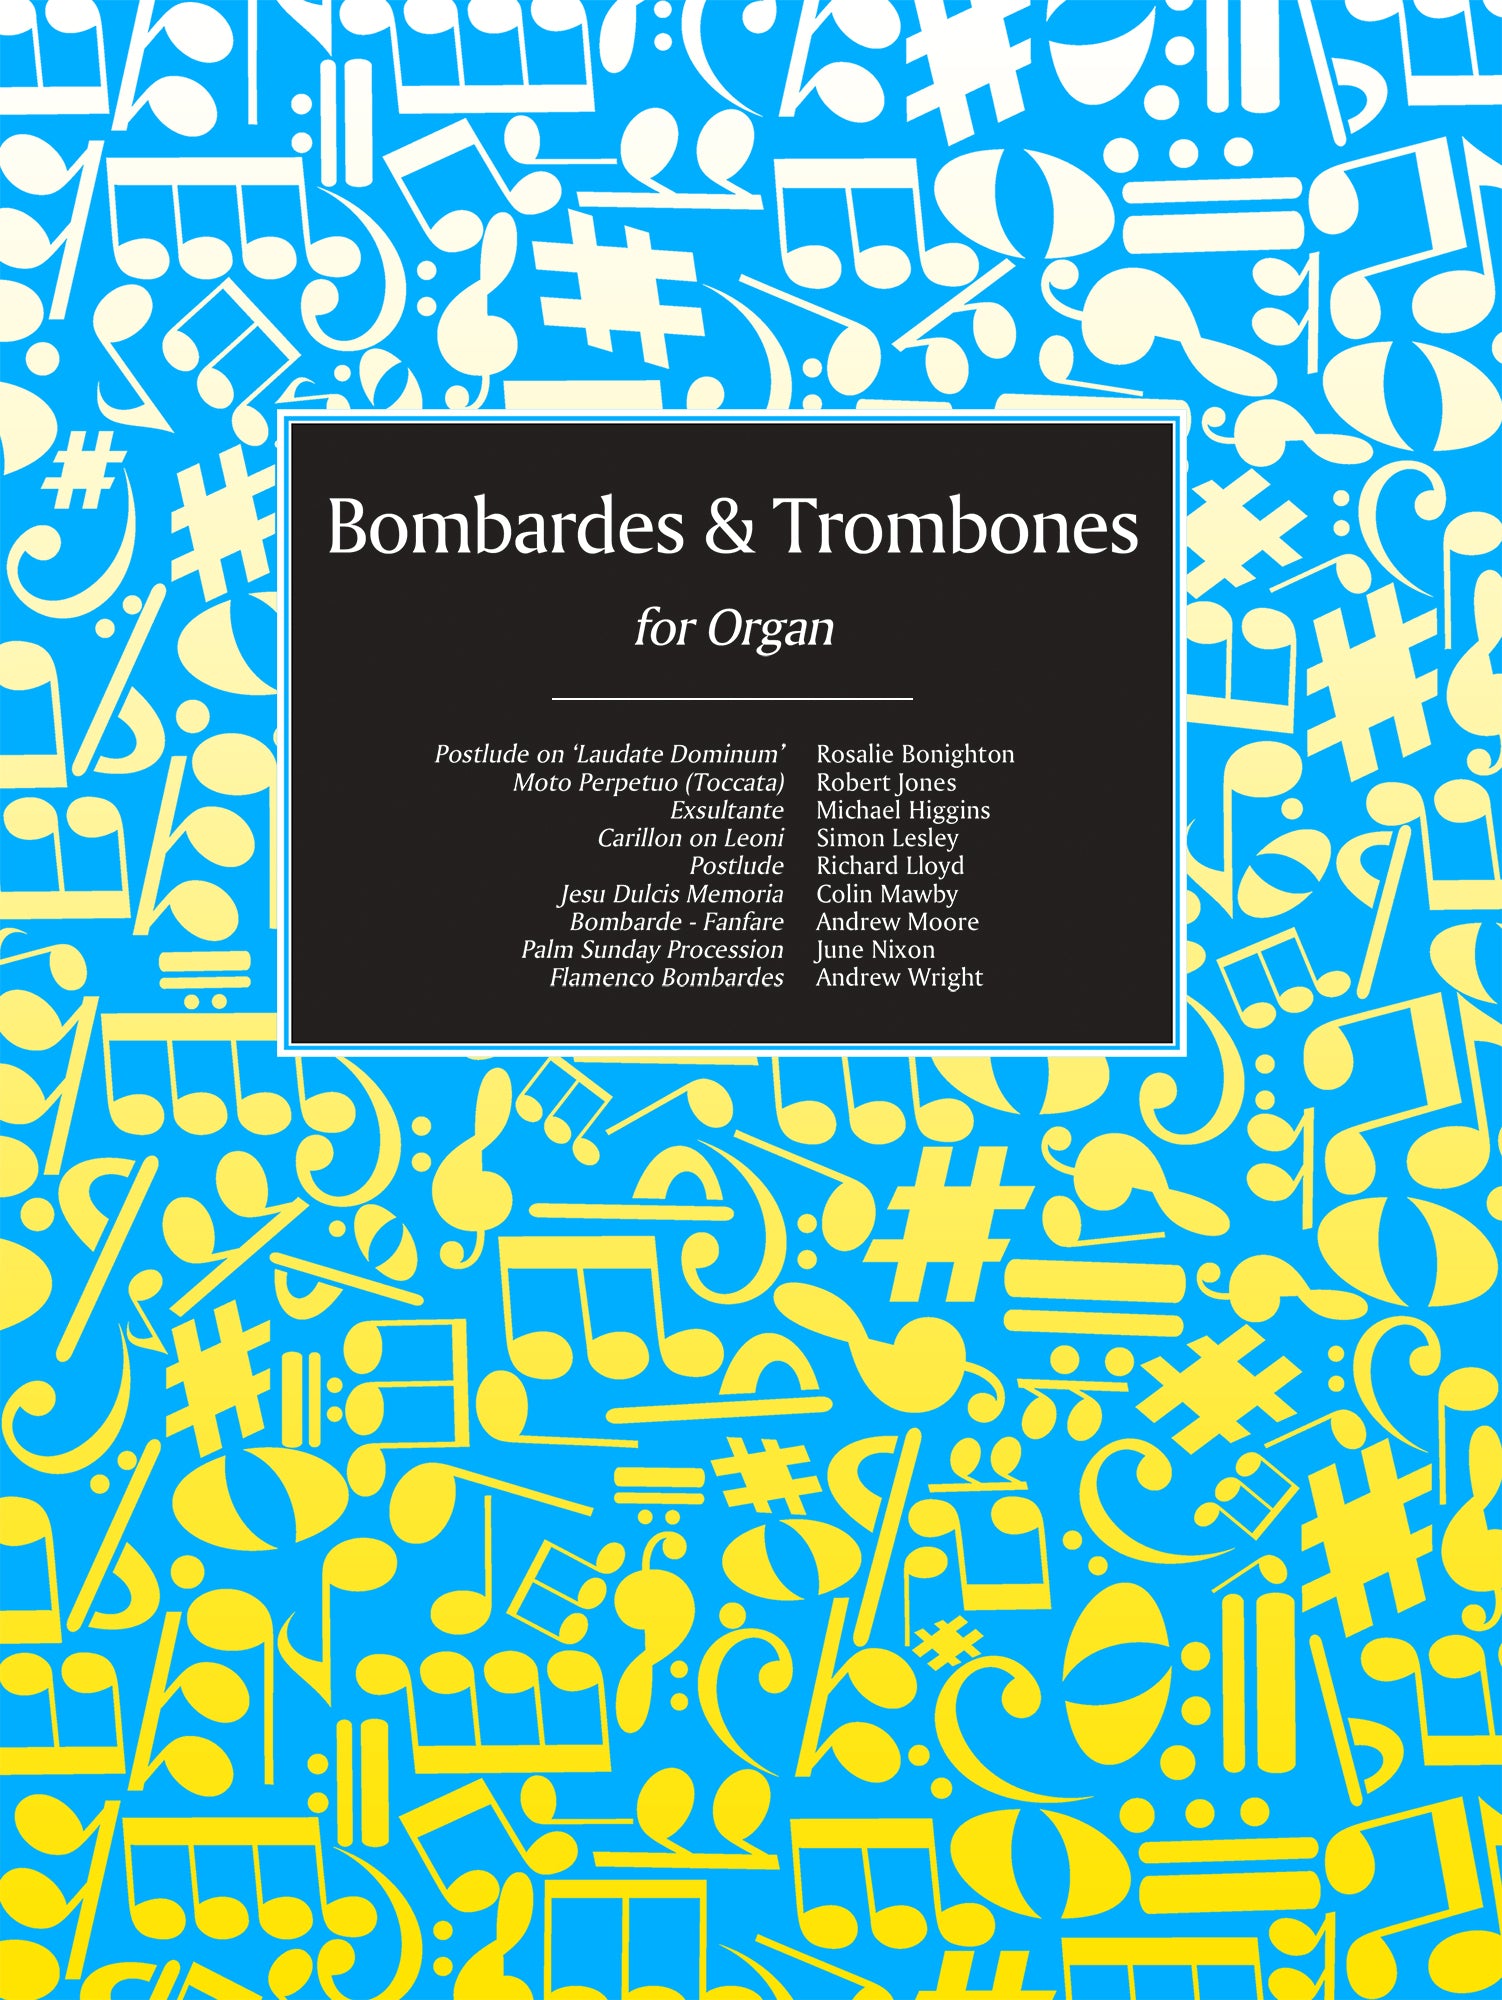 Bombardes & Trombones